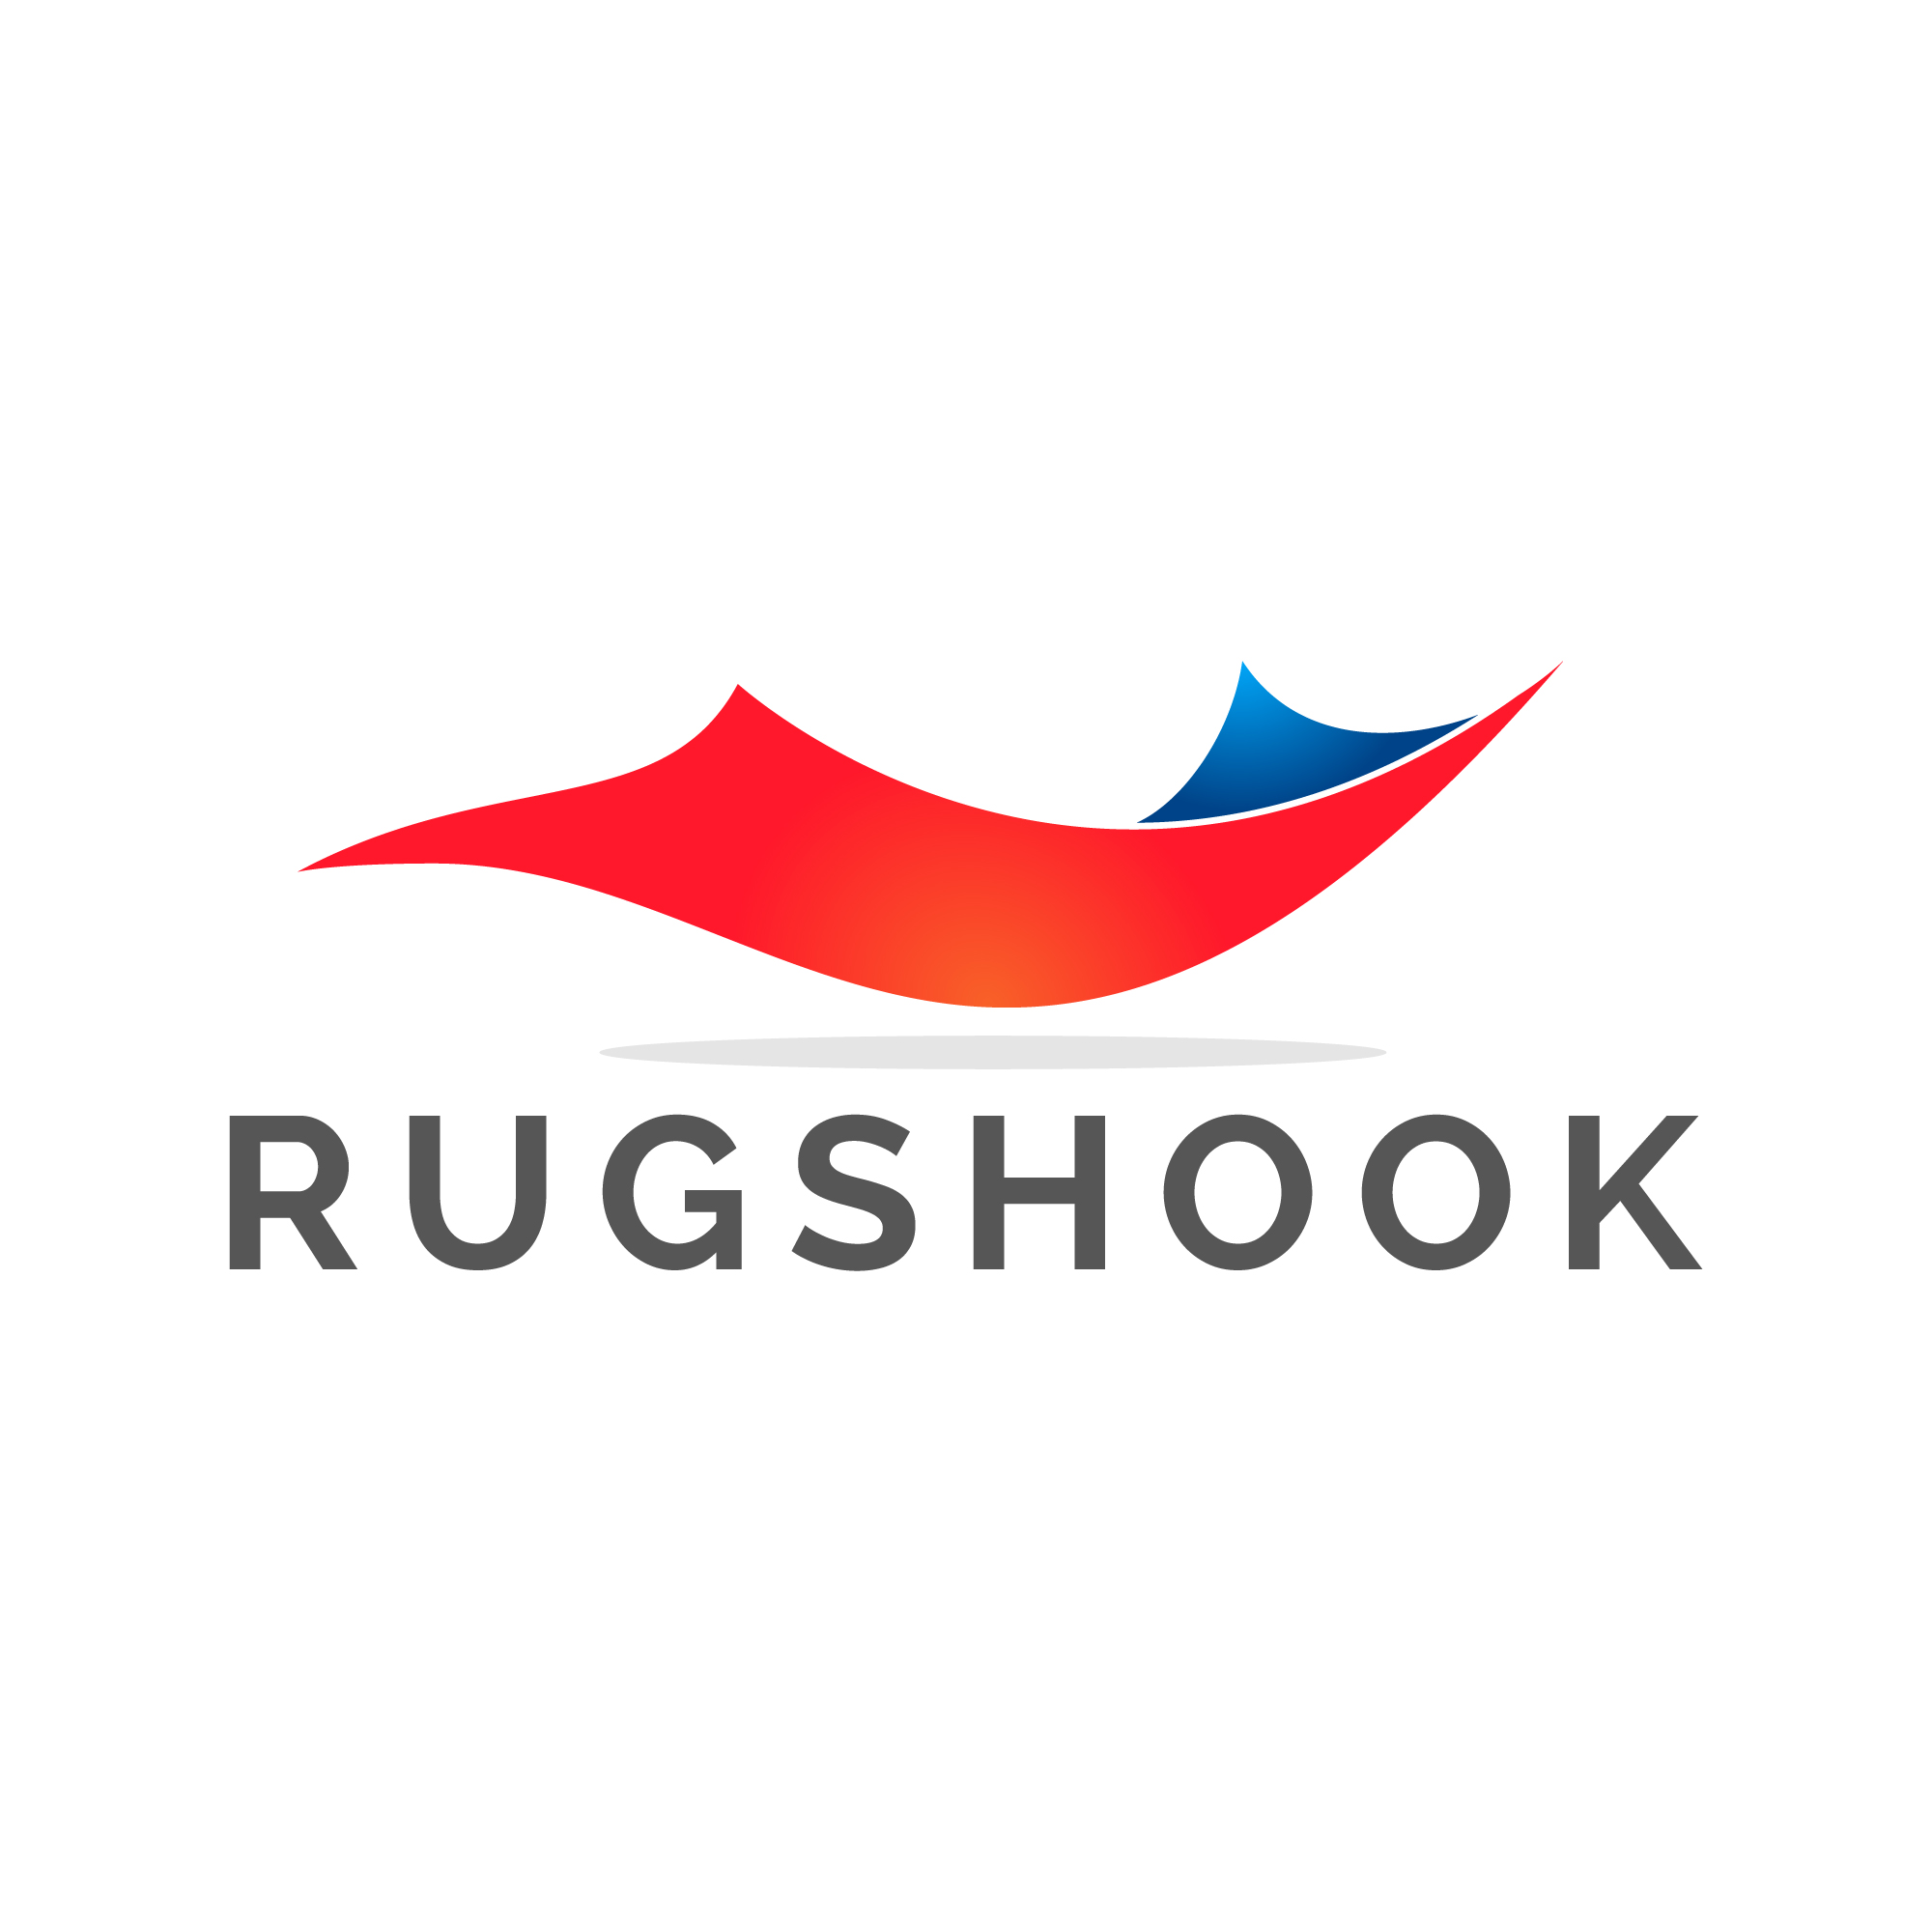 Rugshook